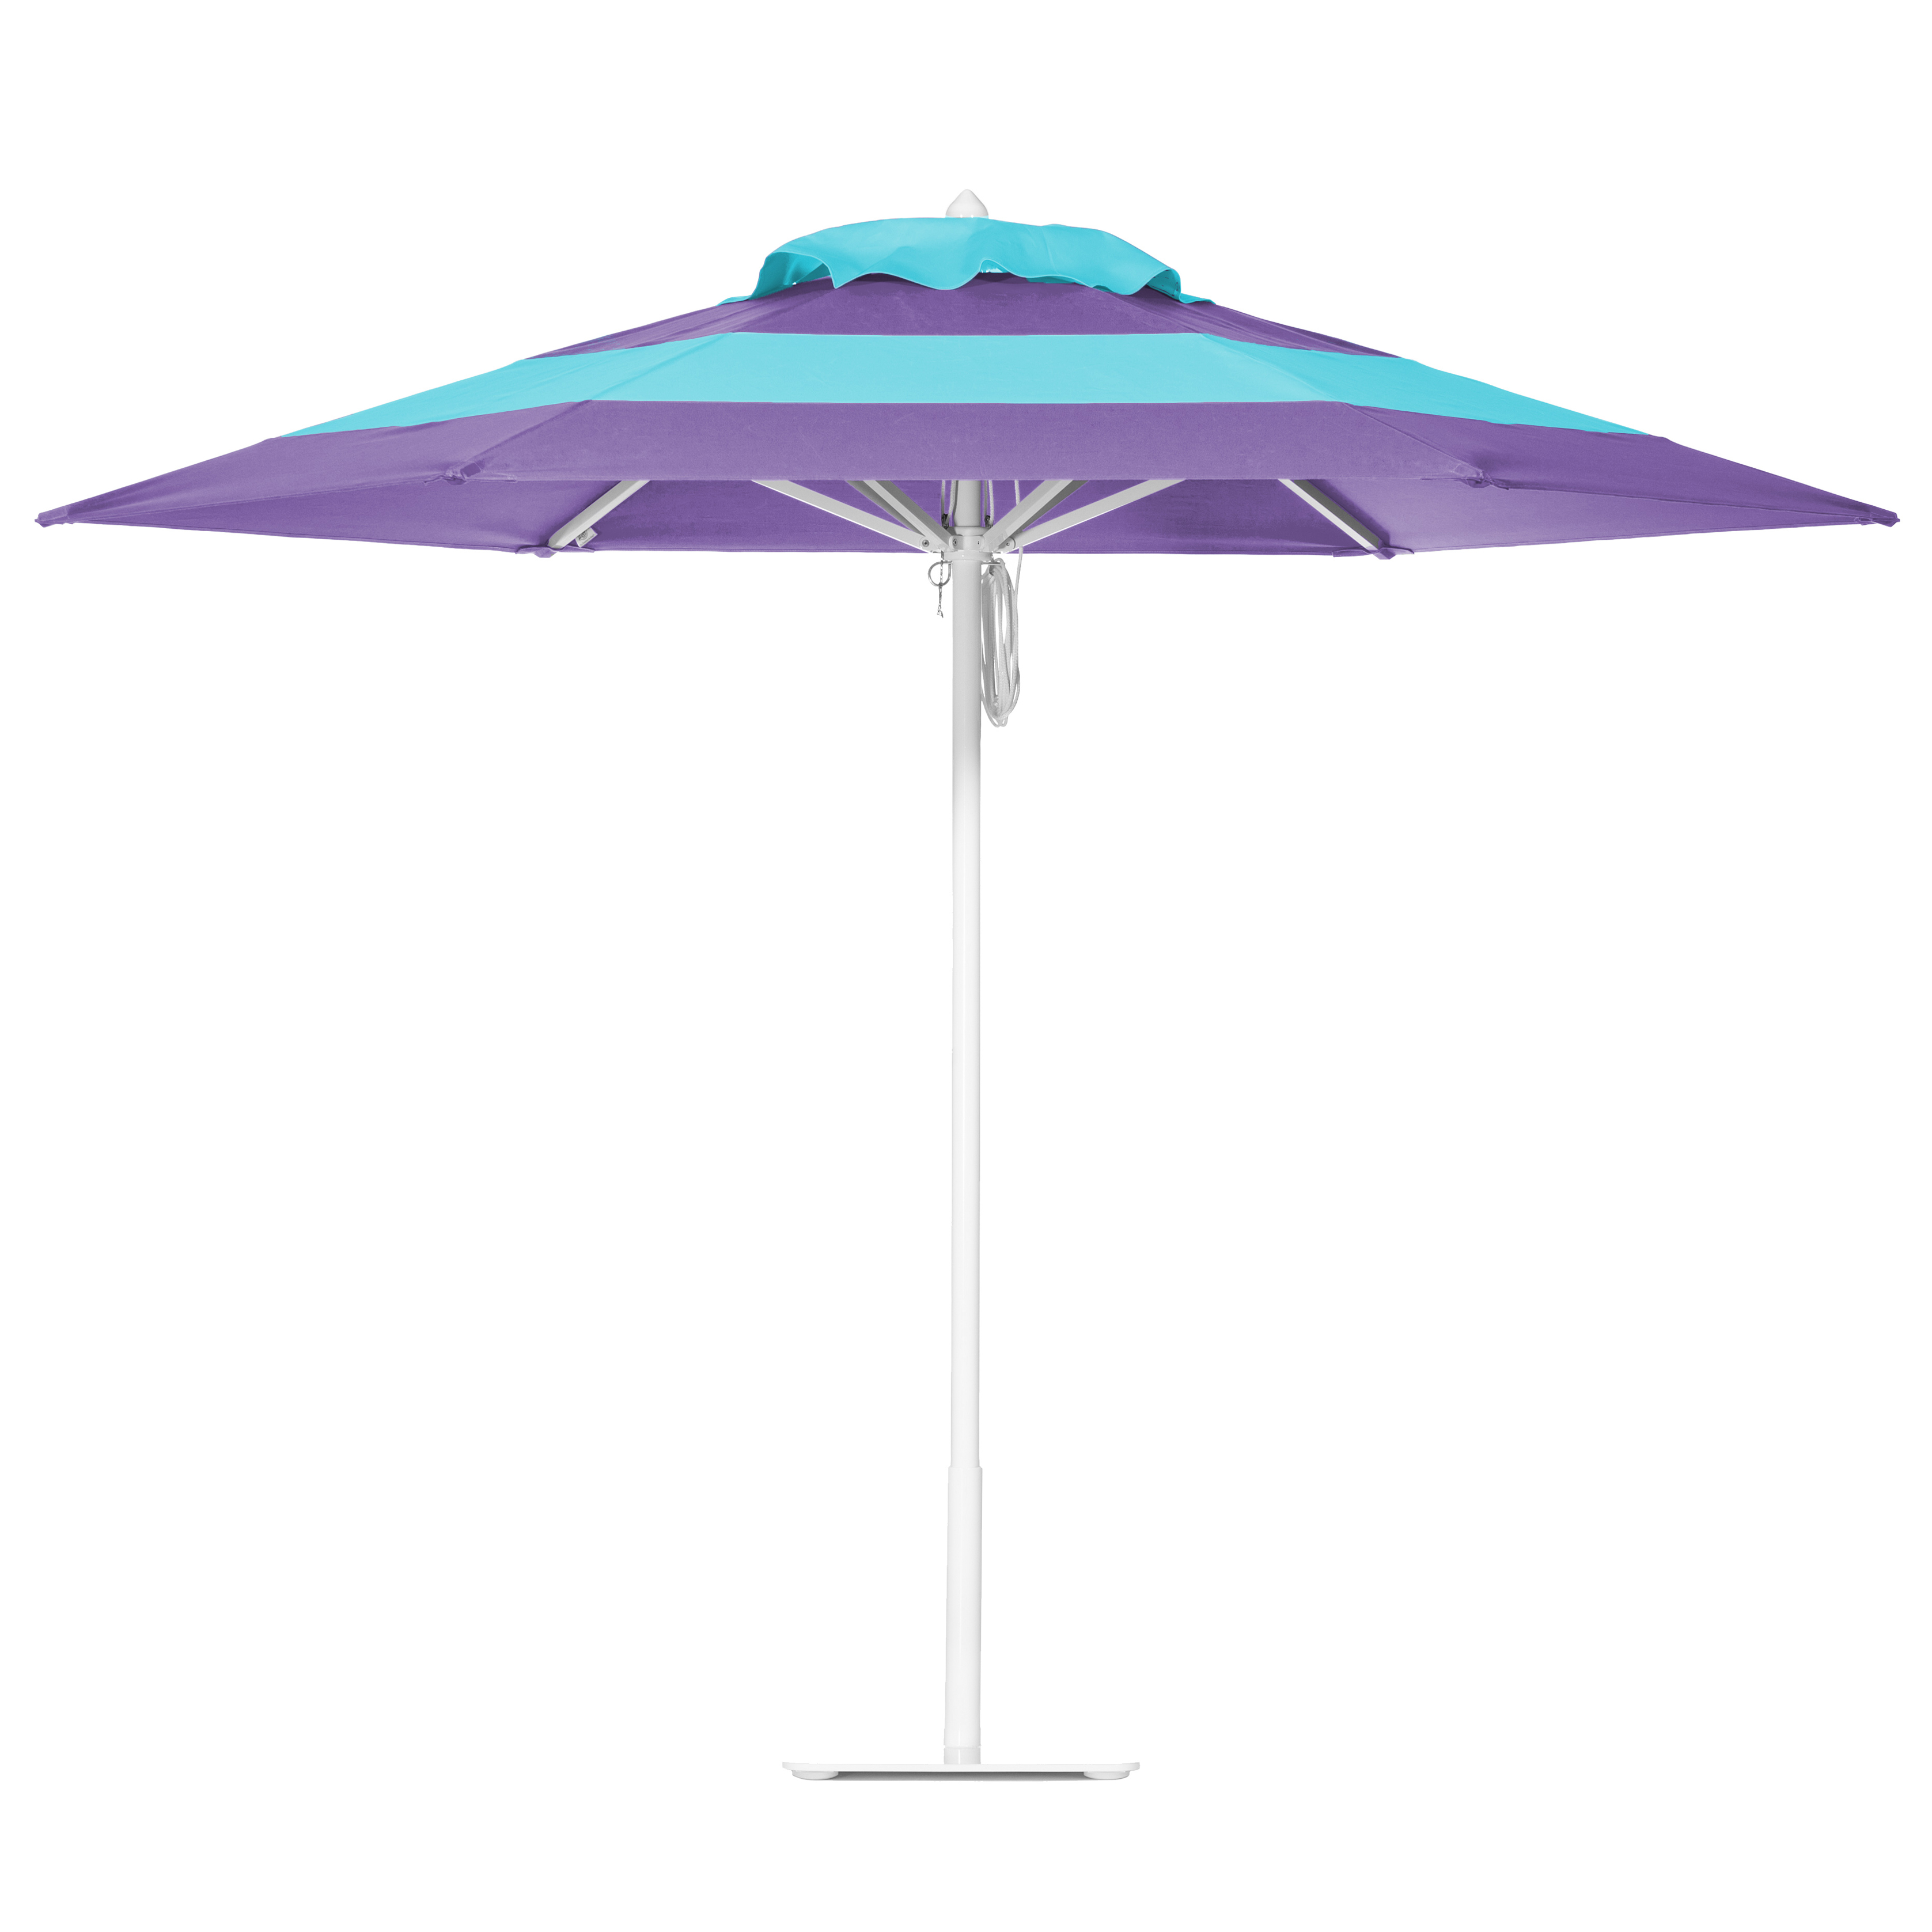 Lavender Sky & Aqua Sea Umbrella Image